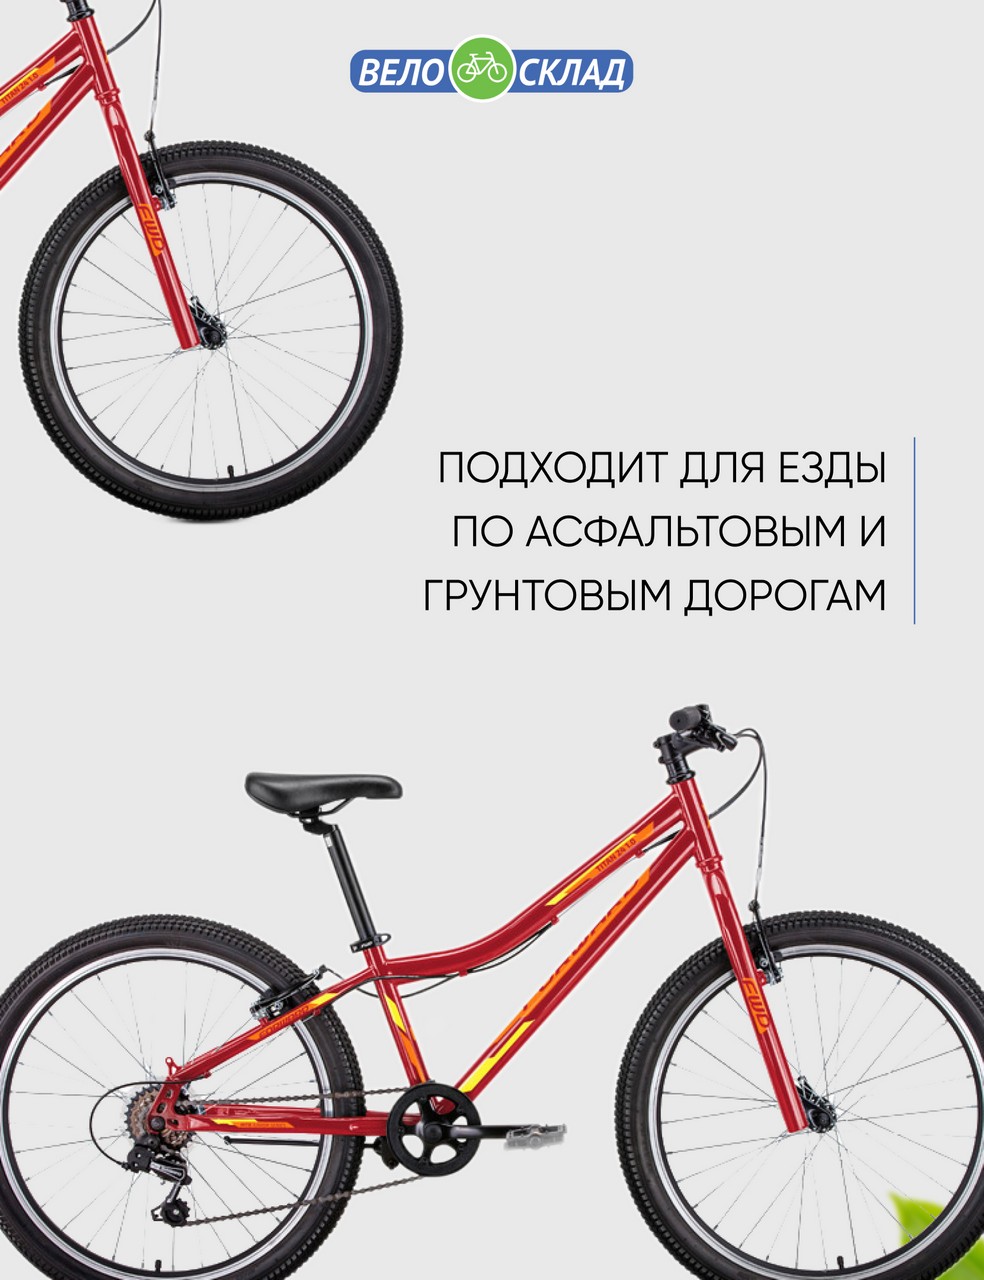 Подростковый велосипед Forward Titan 24 1.0, год 2022, цвет Красный-Желтый